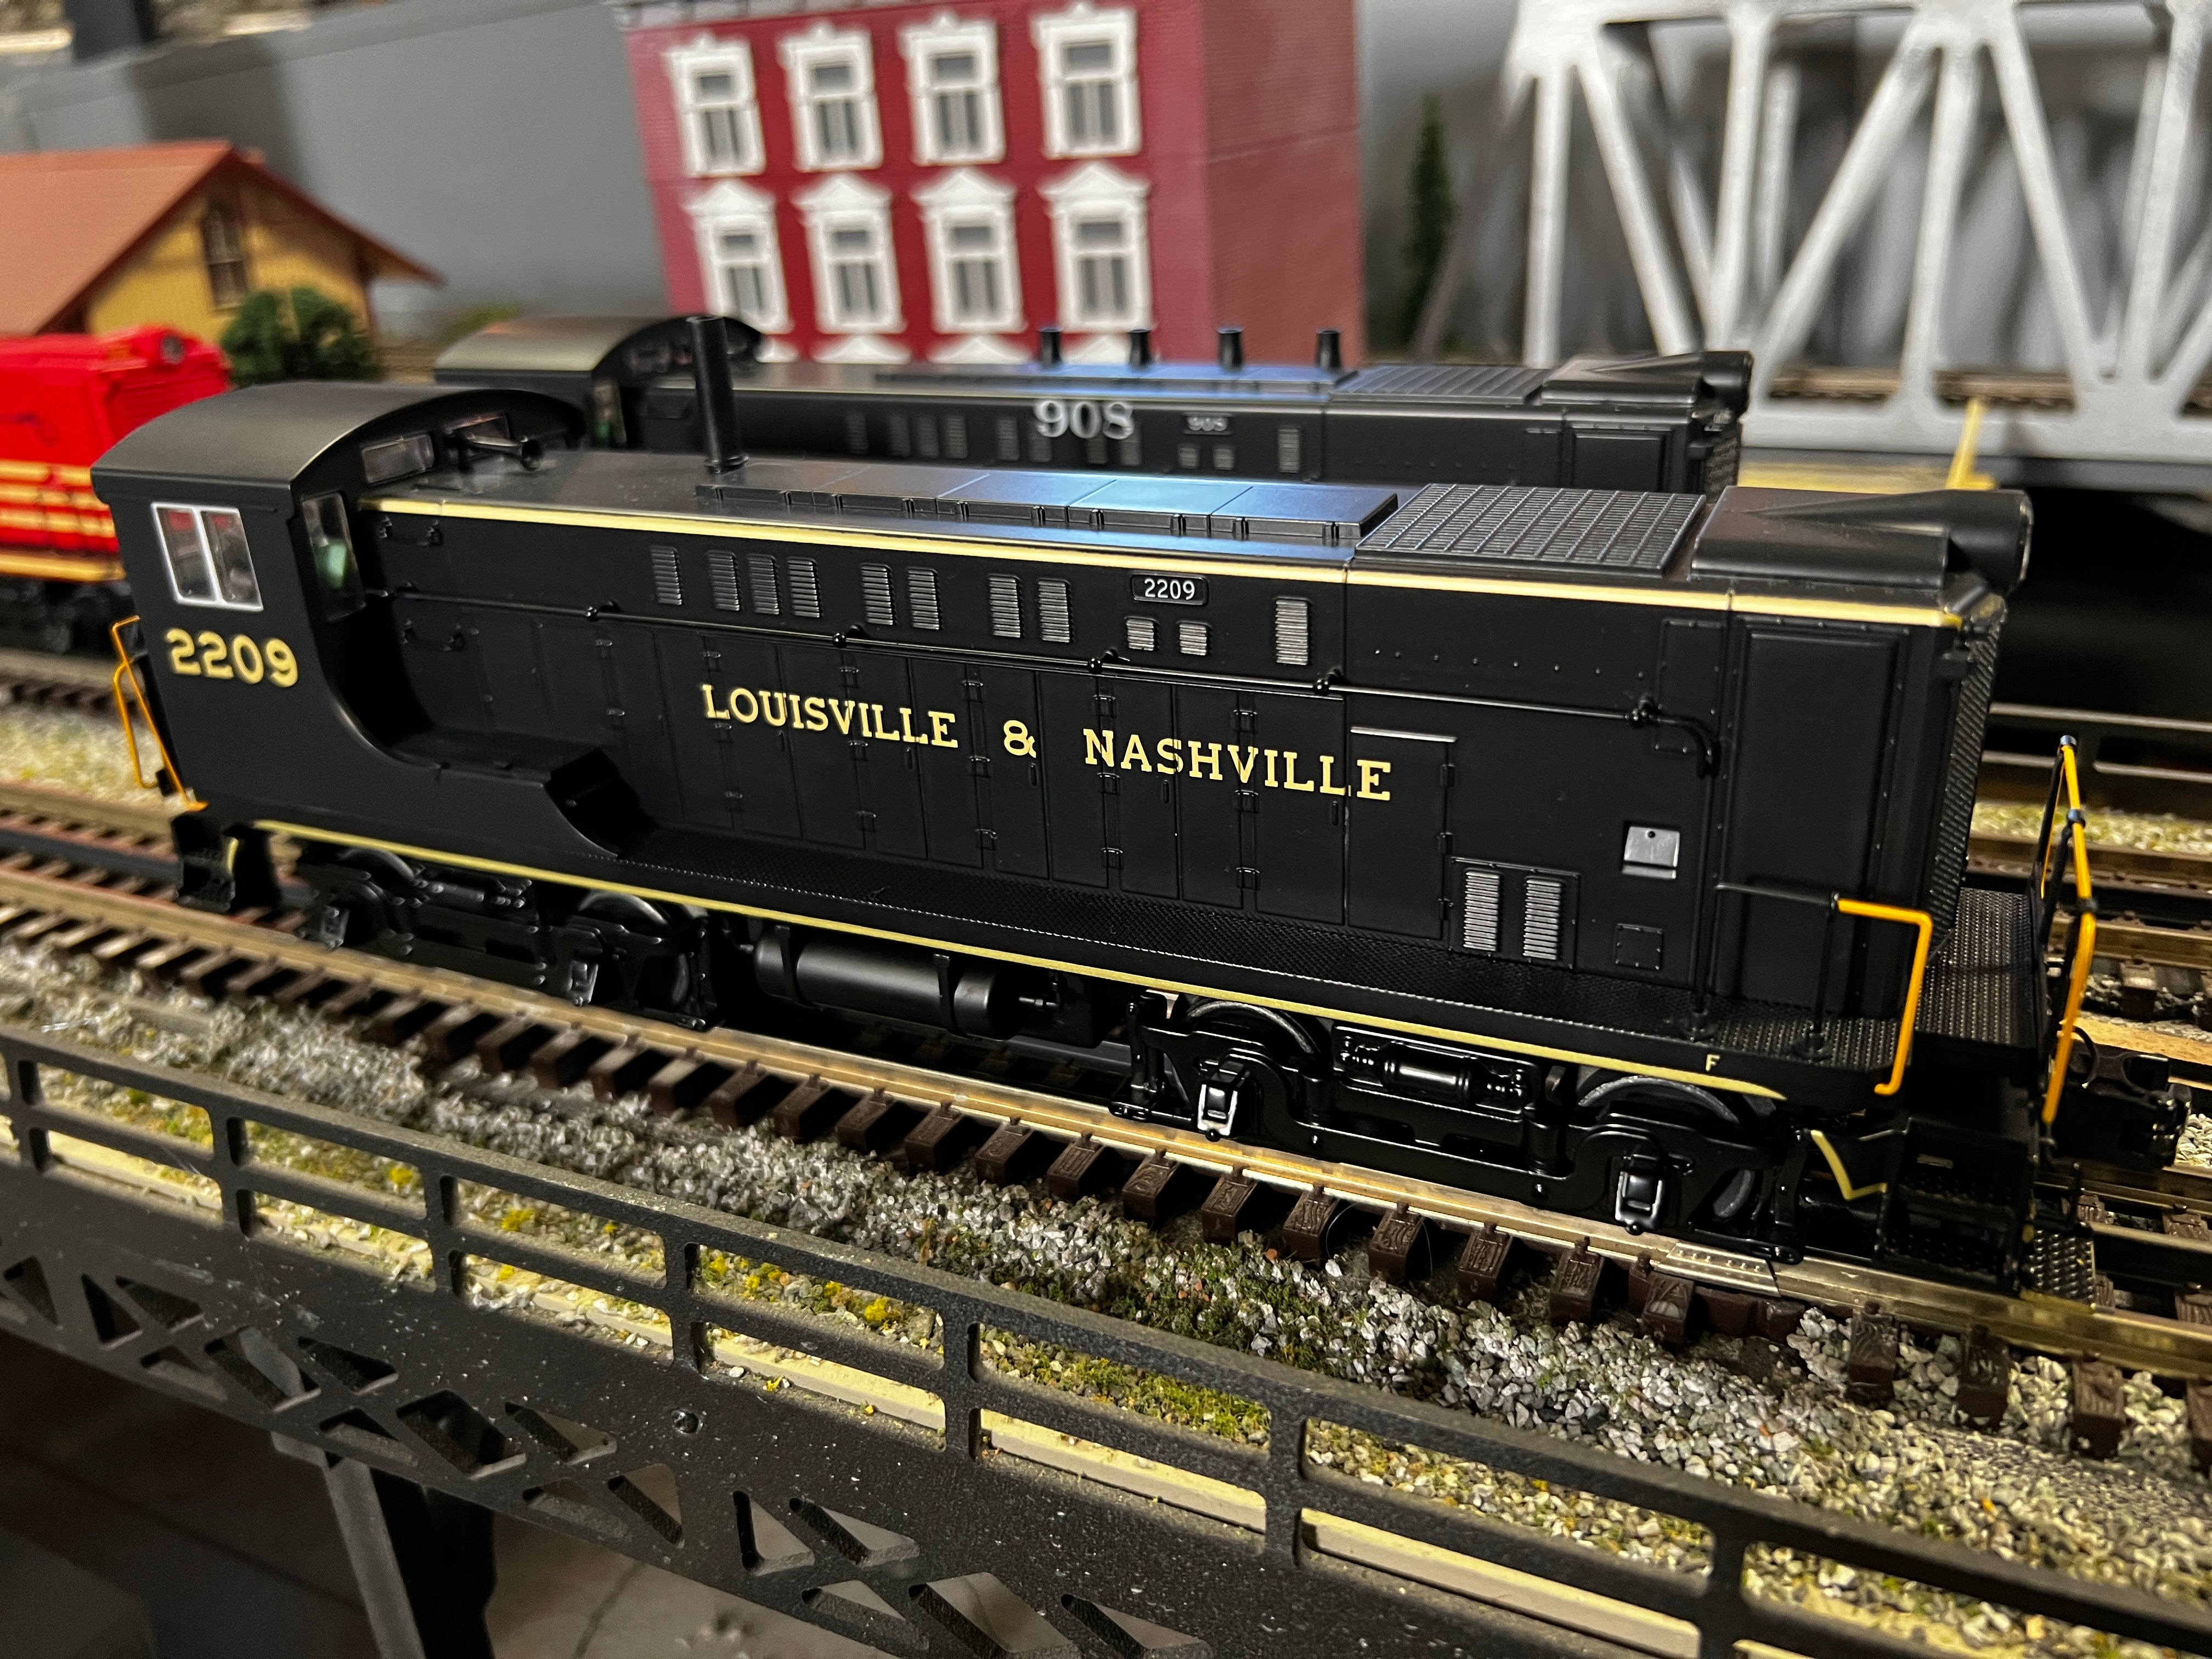 MTH 20-21657-1 - VO 1000 Diesel Engine "Louisville & Nashville" w/ PS3 #2209 - Custom Run for MrMuffin'sTrains